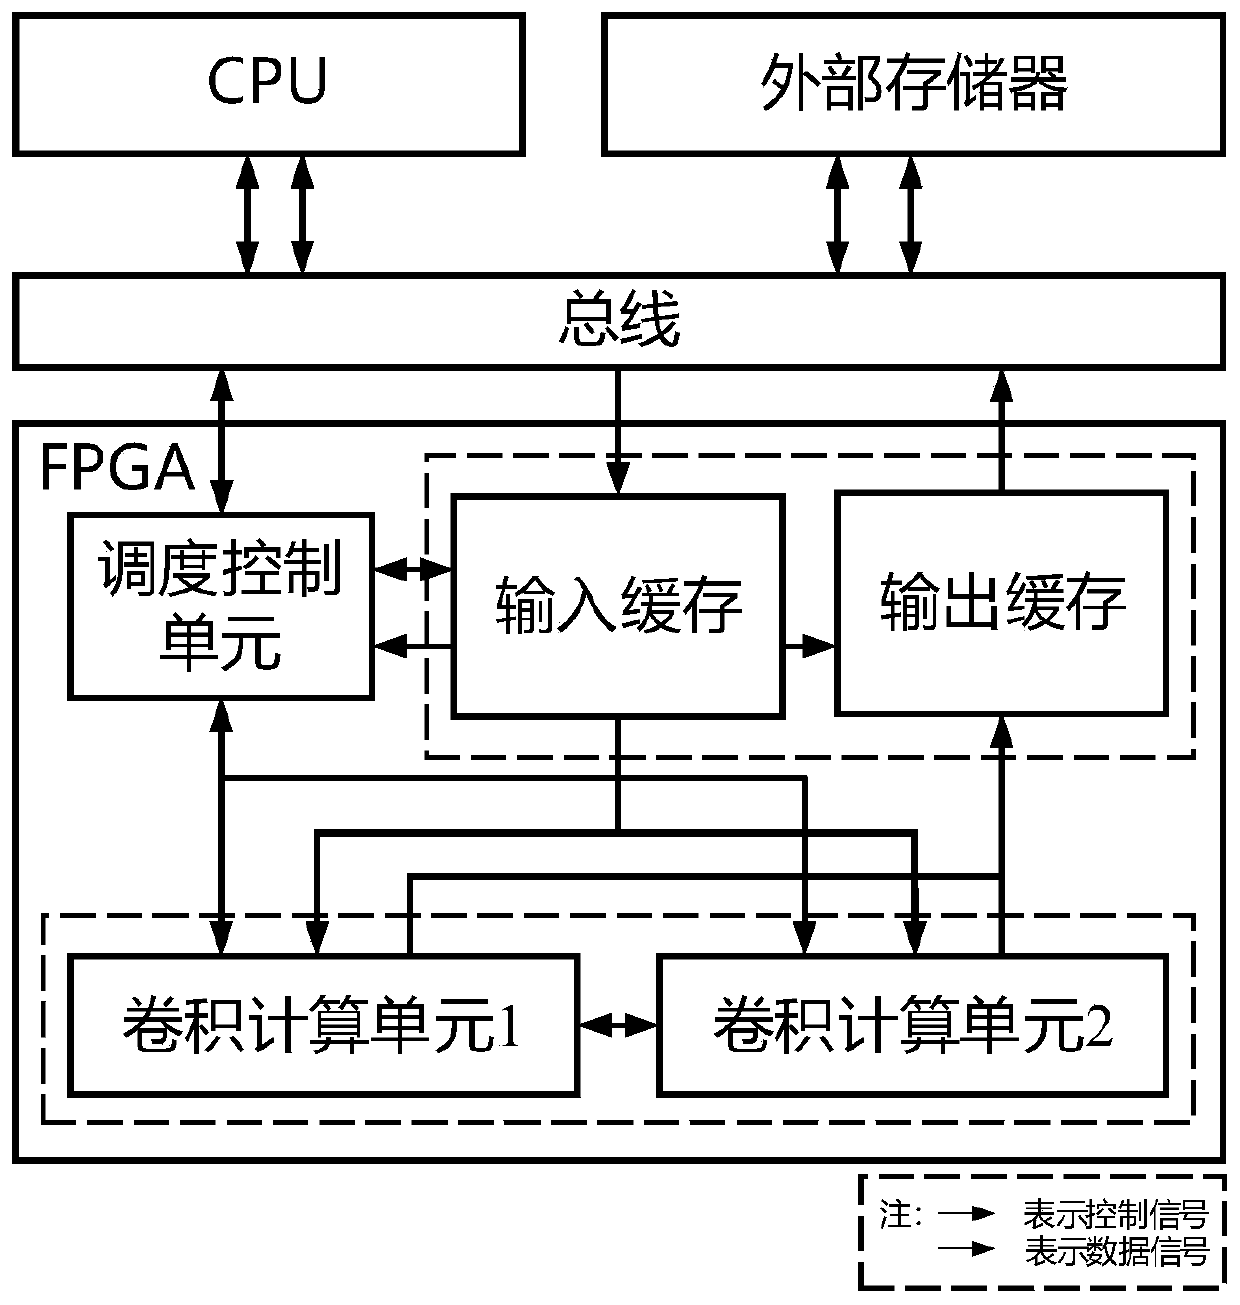 Heterogeneous neural network calculation accelerator design method based on FPGA